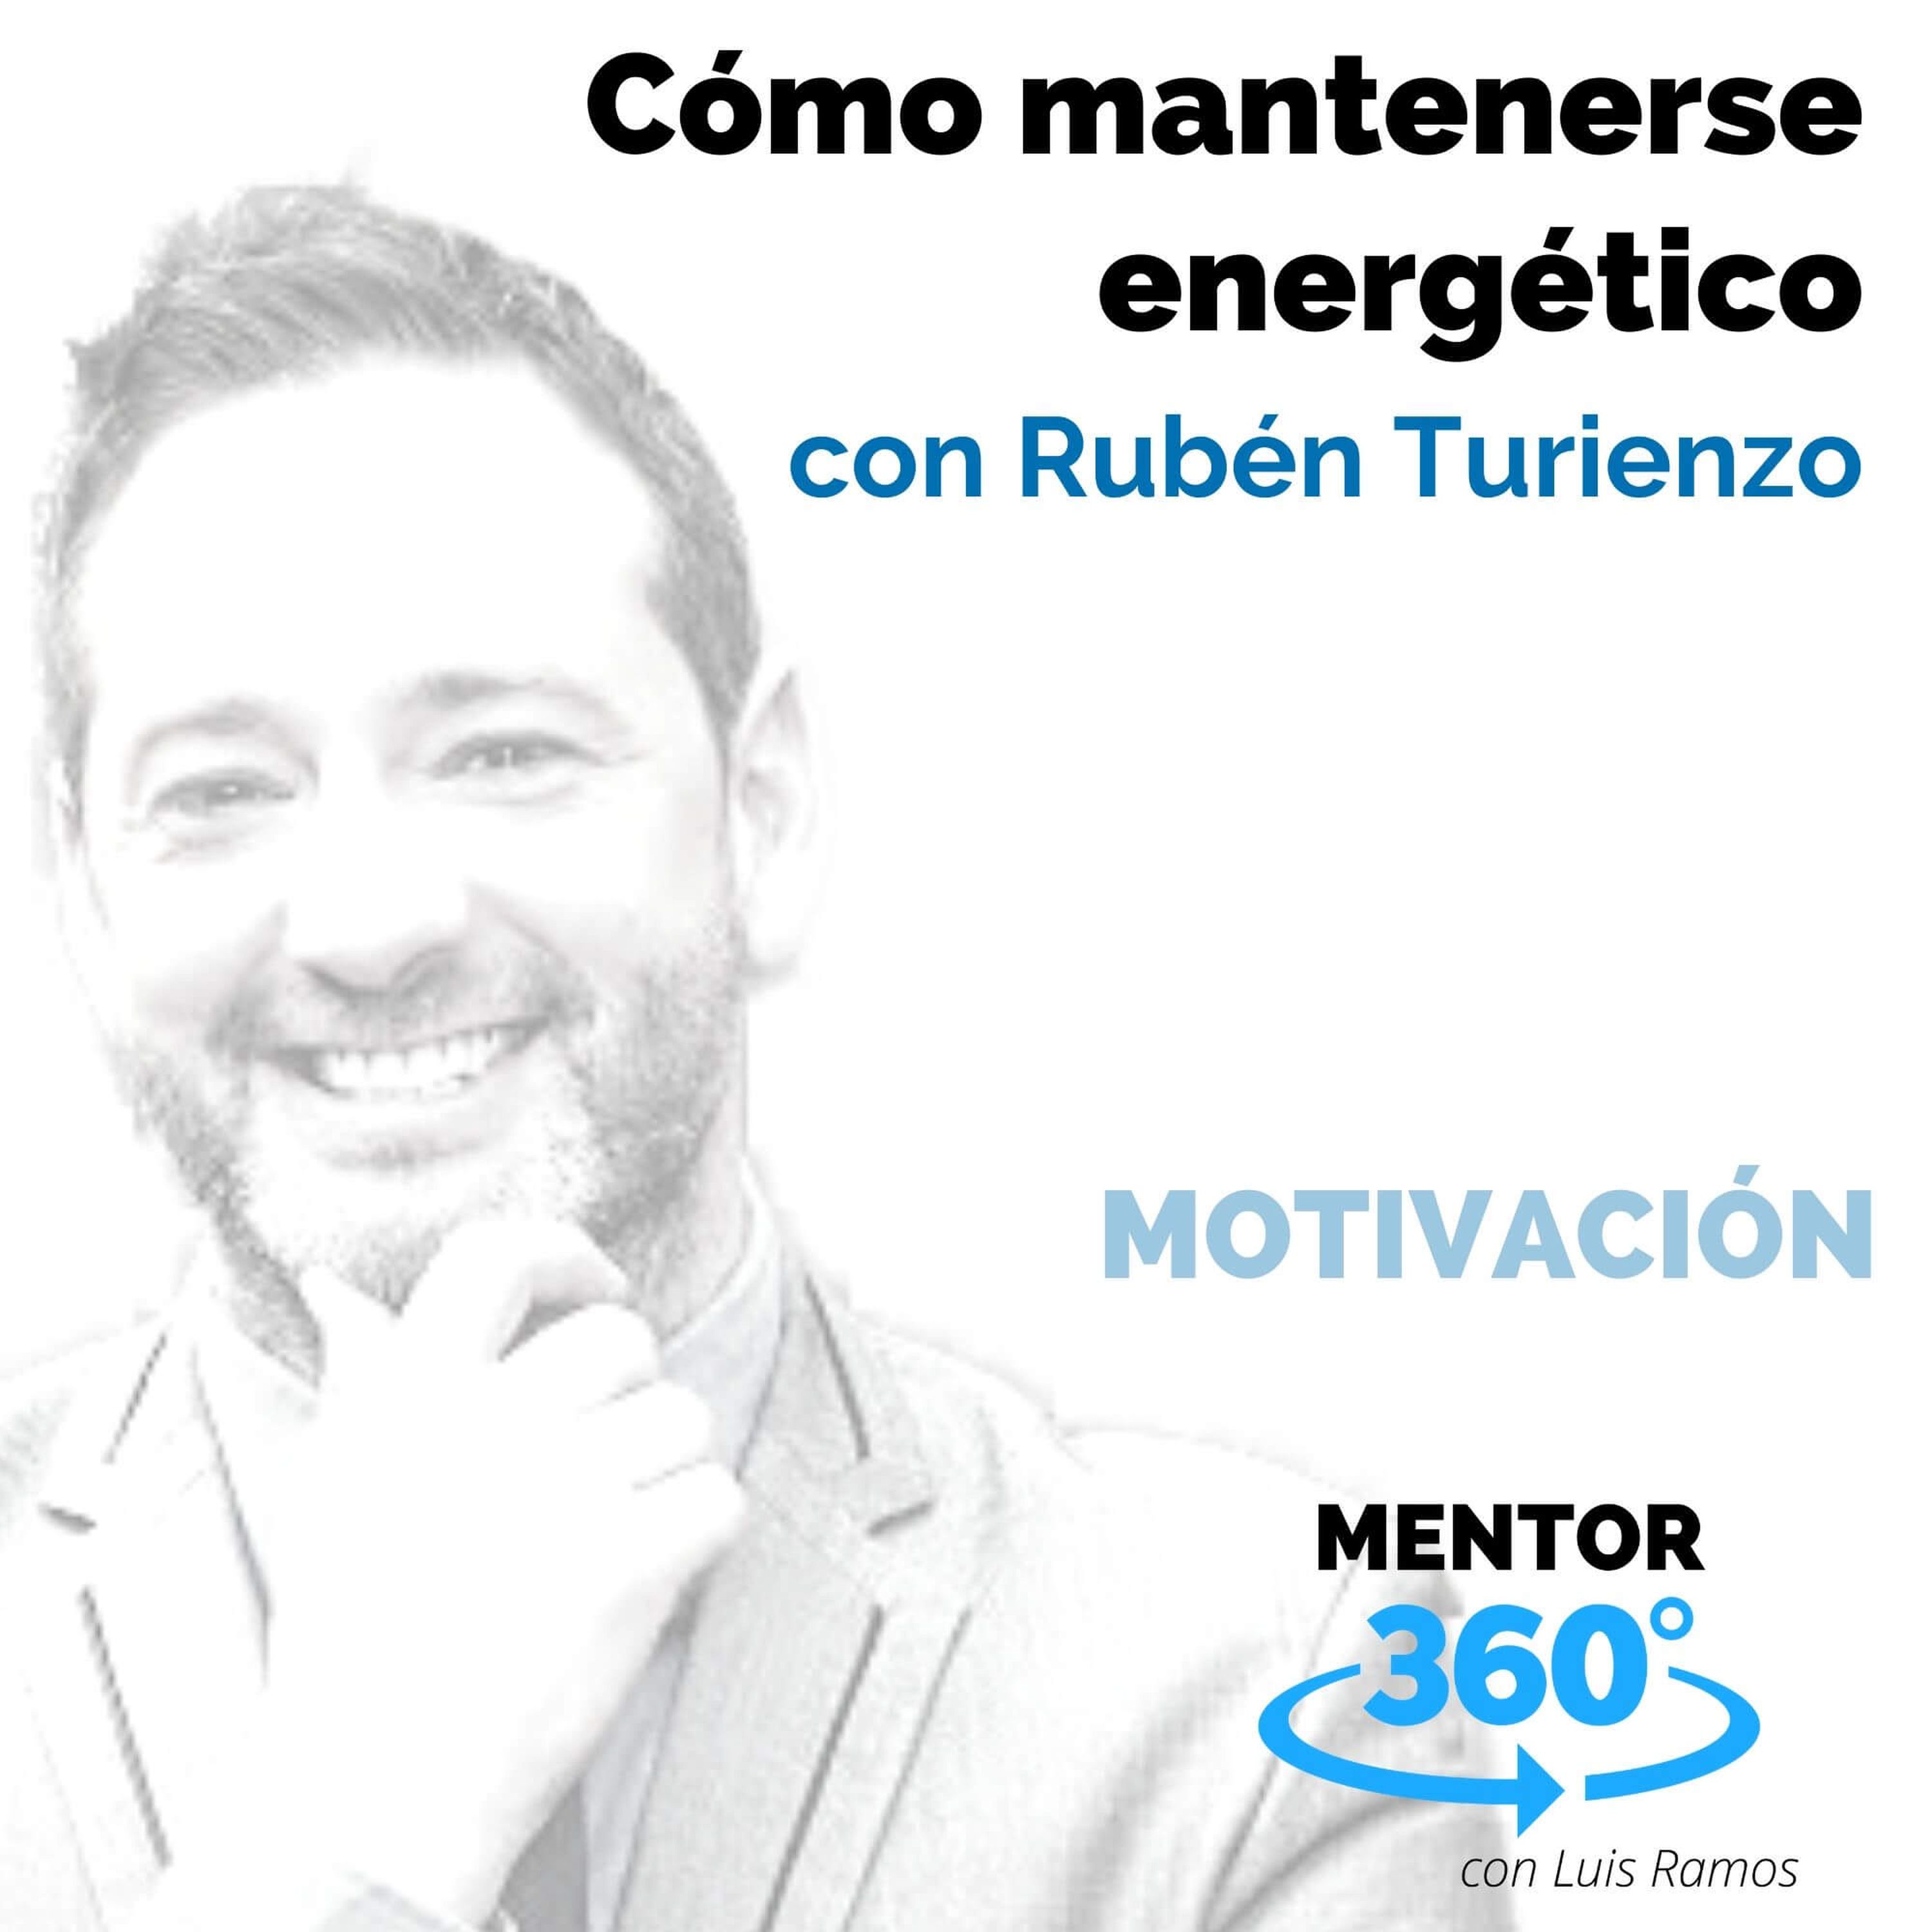 Cómo mantenerse energético, Con Rubén Turienzo - MOTIVACIÓN